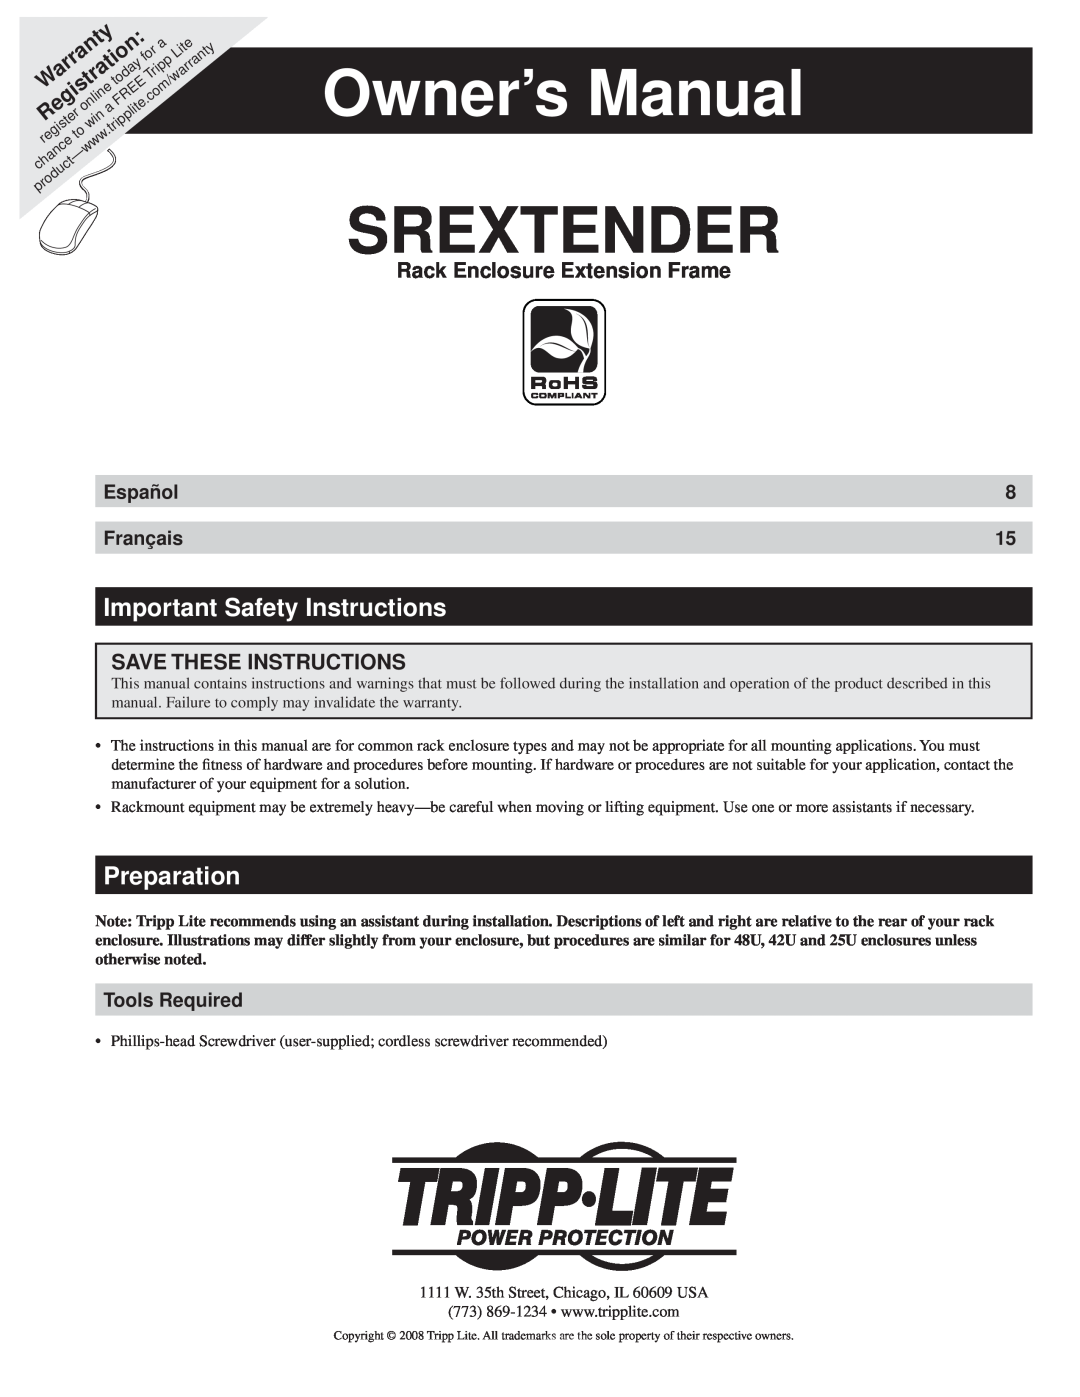 Tripp Lite SREXTENDER owner manual Important Safety Instructions, Preparation, Rack Enclosure Extension Frame, Srextender 